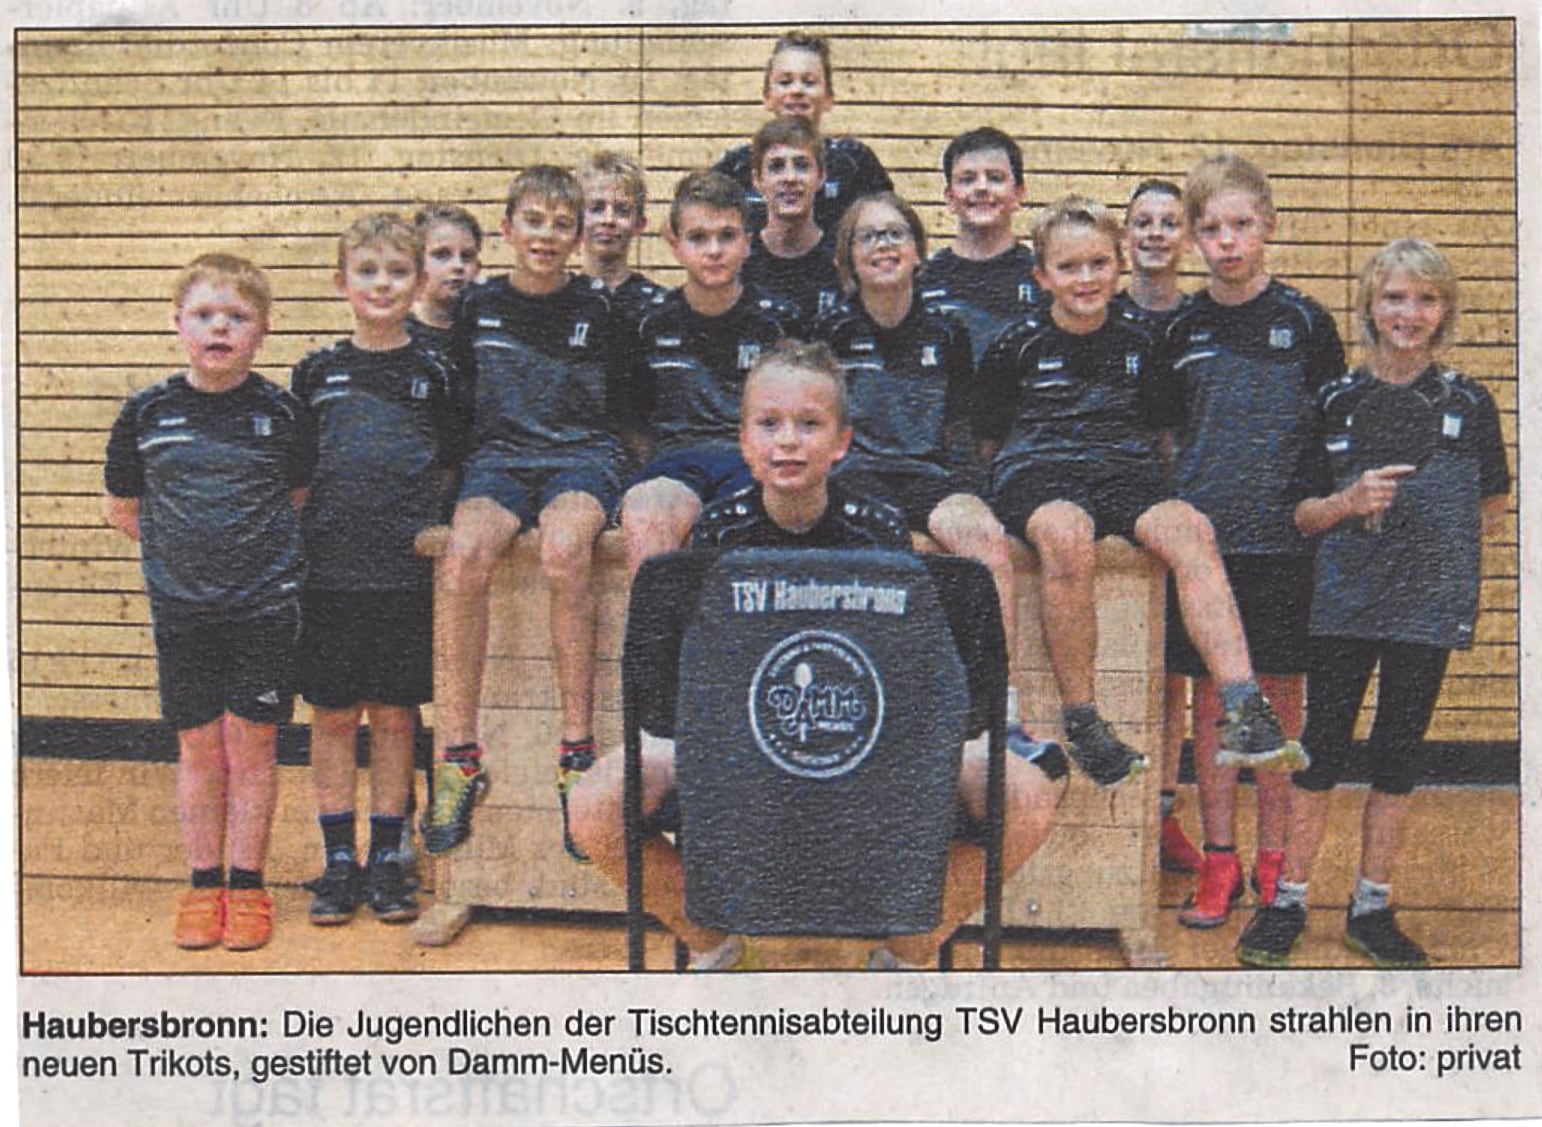 Die Jugendlichen der Tischtennisabteilung TSV Haubersbronn strahlen in Ihren neuen Trikots, gestiftet von Damm-Menüs.